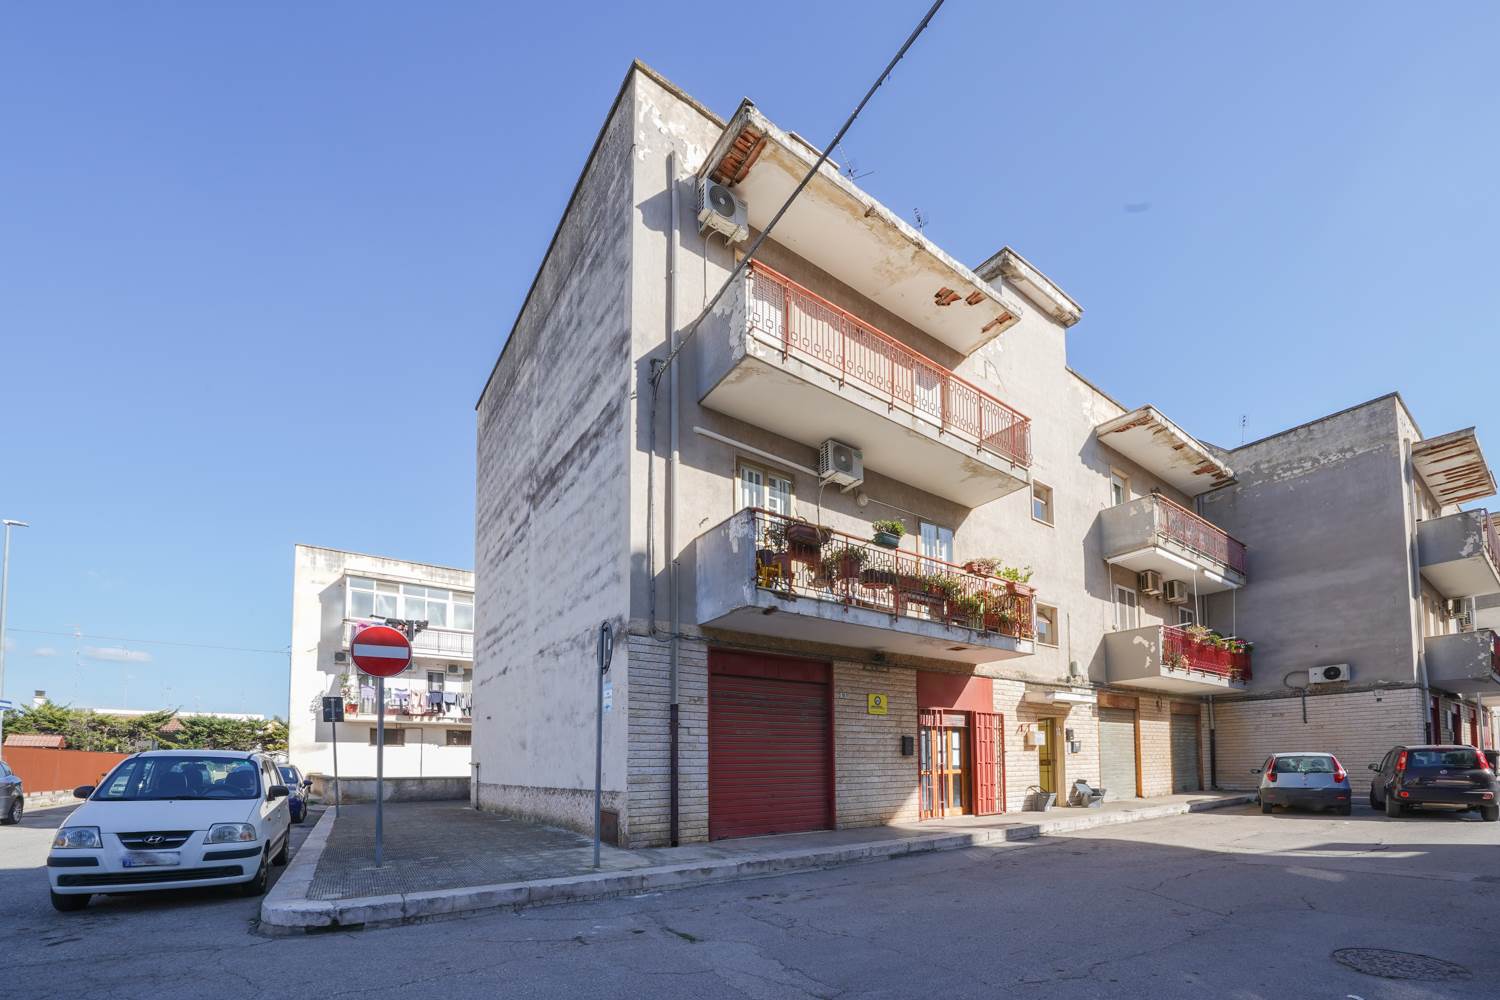 Immobile Commerciale in vendita a Palo del Colle, 2 locali, prezzo € 78.000 | PortaleAgenzieImmobiliari.it